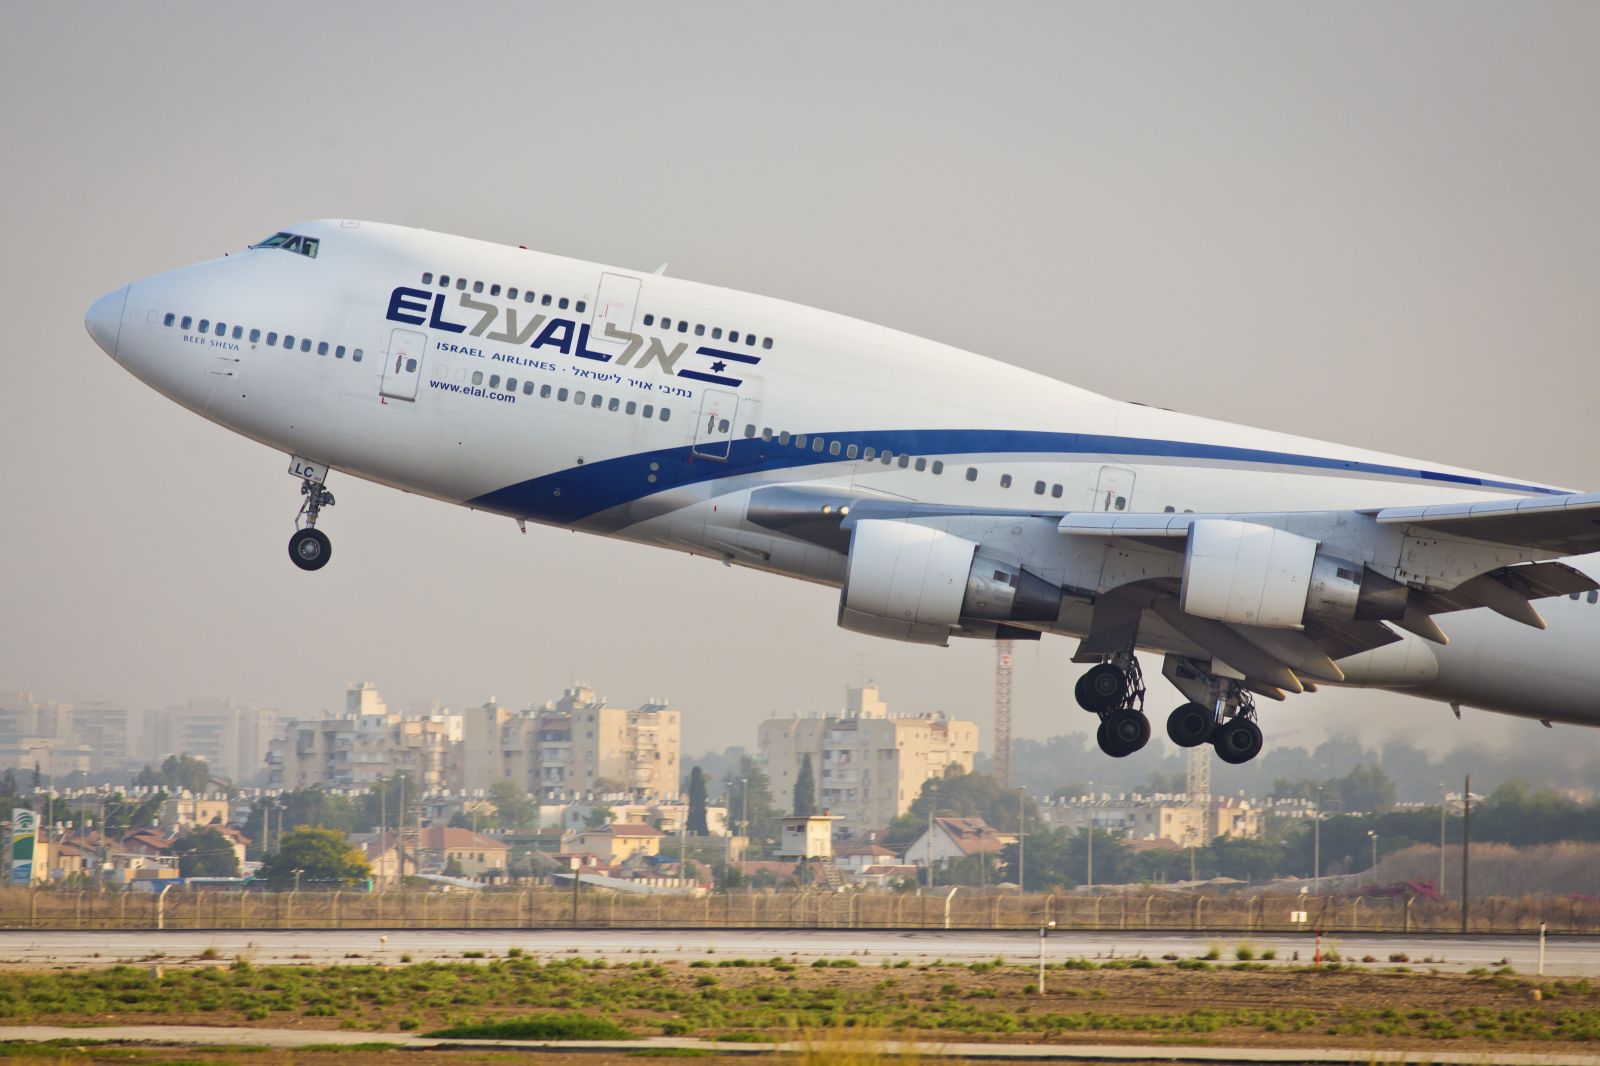 Рейс эль аль. Израильские авиалинии Эль Аль. El al Israel Airlines самолеты. Израильской авиакомпанией el al(«Эль-Аль»). Авиабилеты израильские авиалинии.